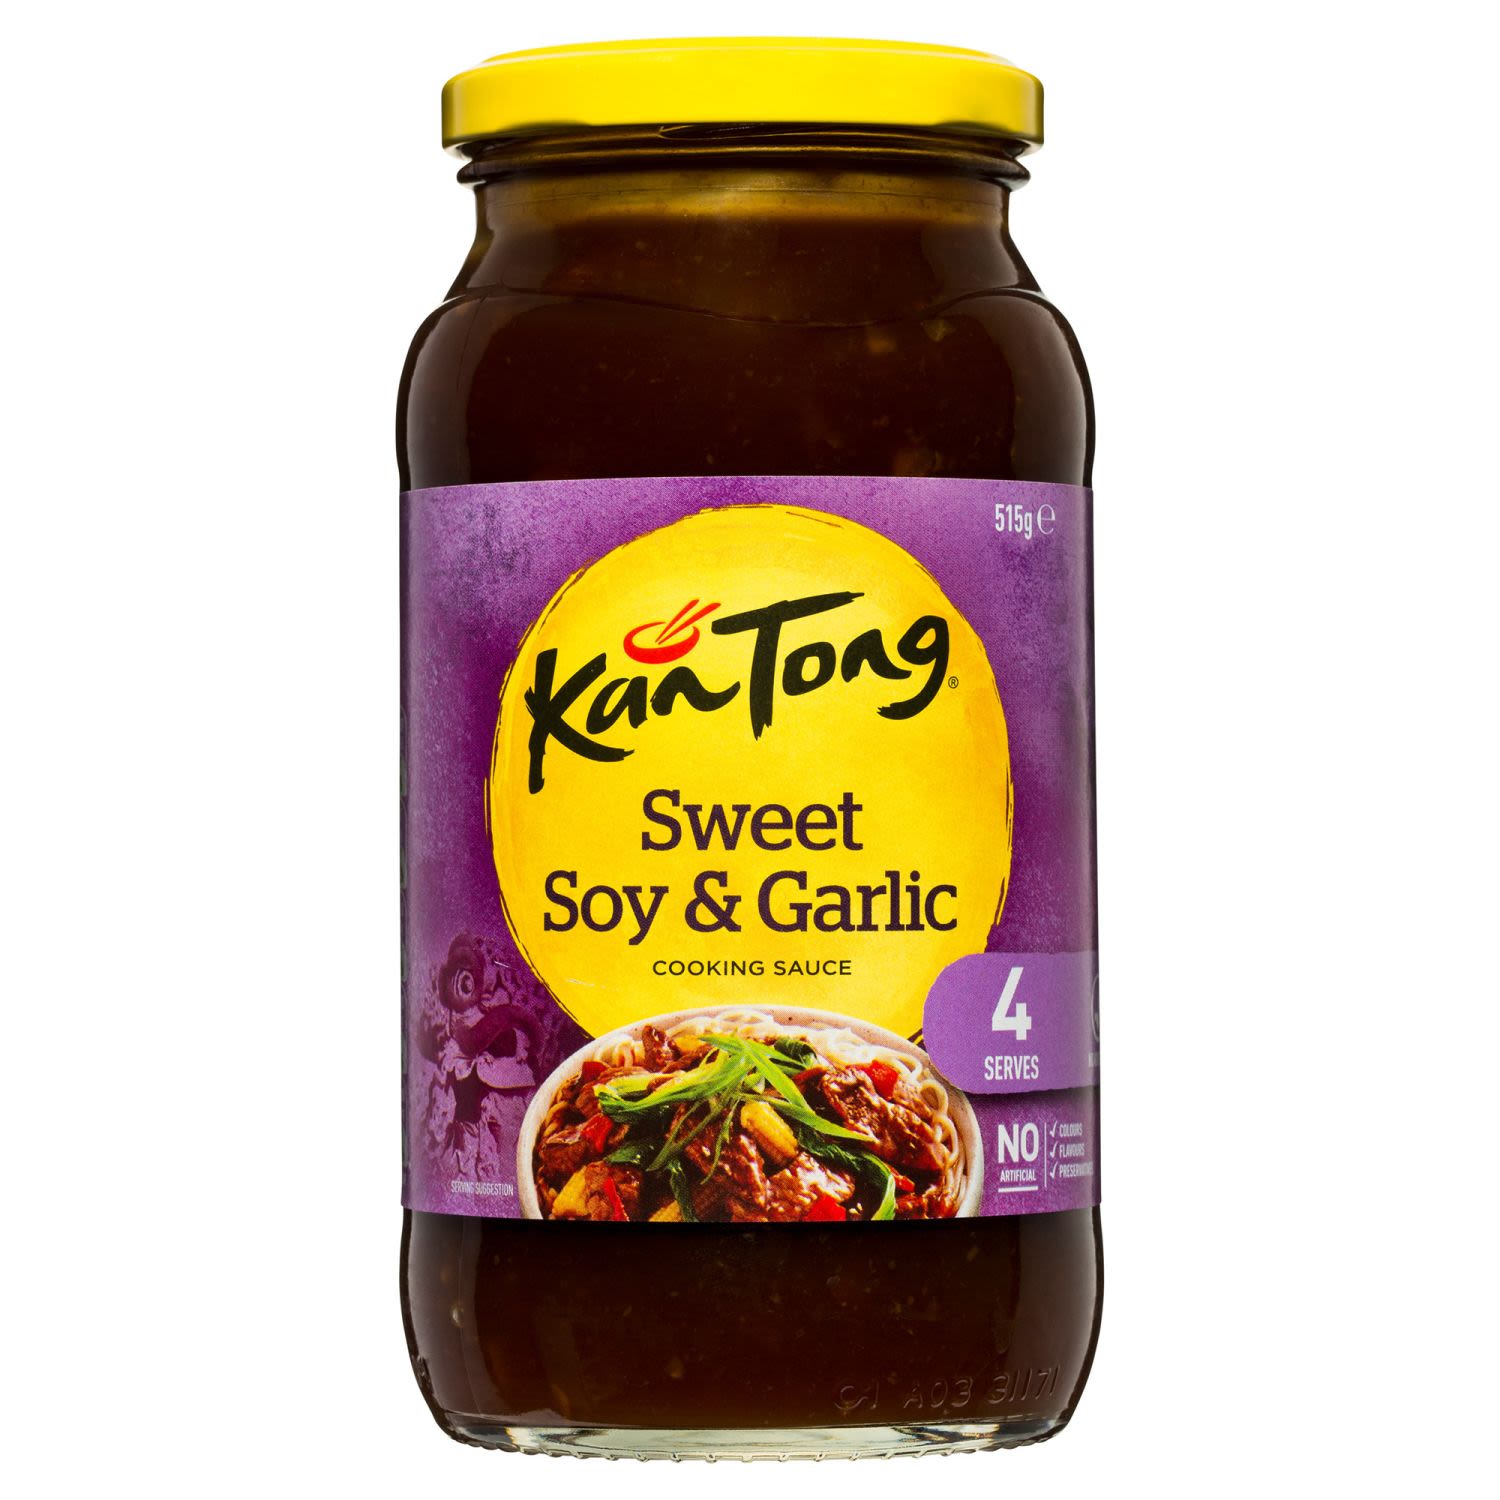 Kan Tong Stir Fry Sauce Sweet Soy & Garlic, 515 Gram